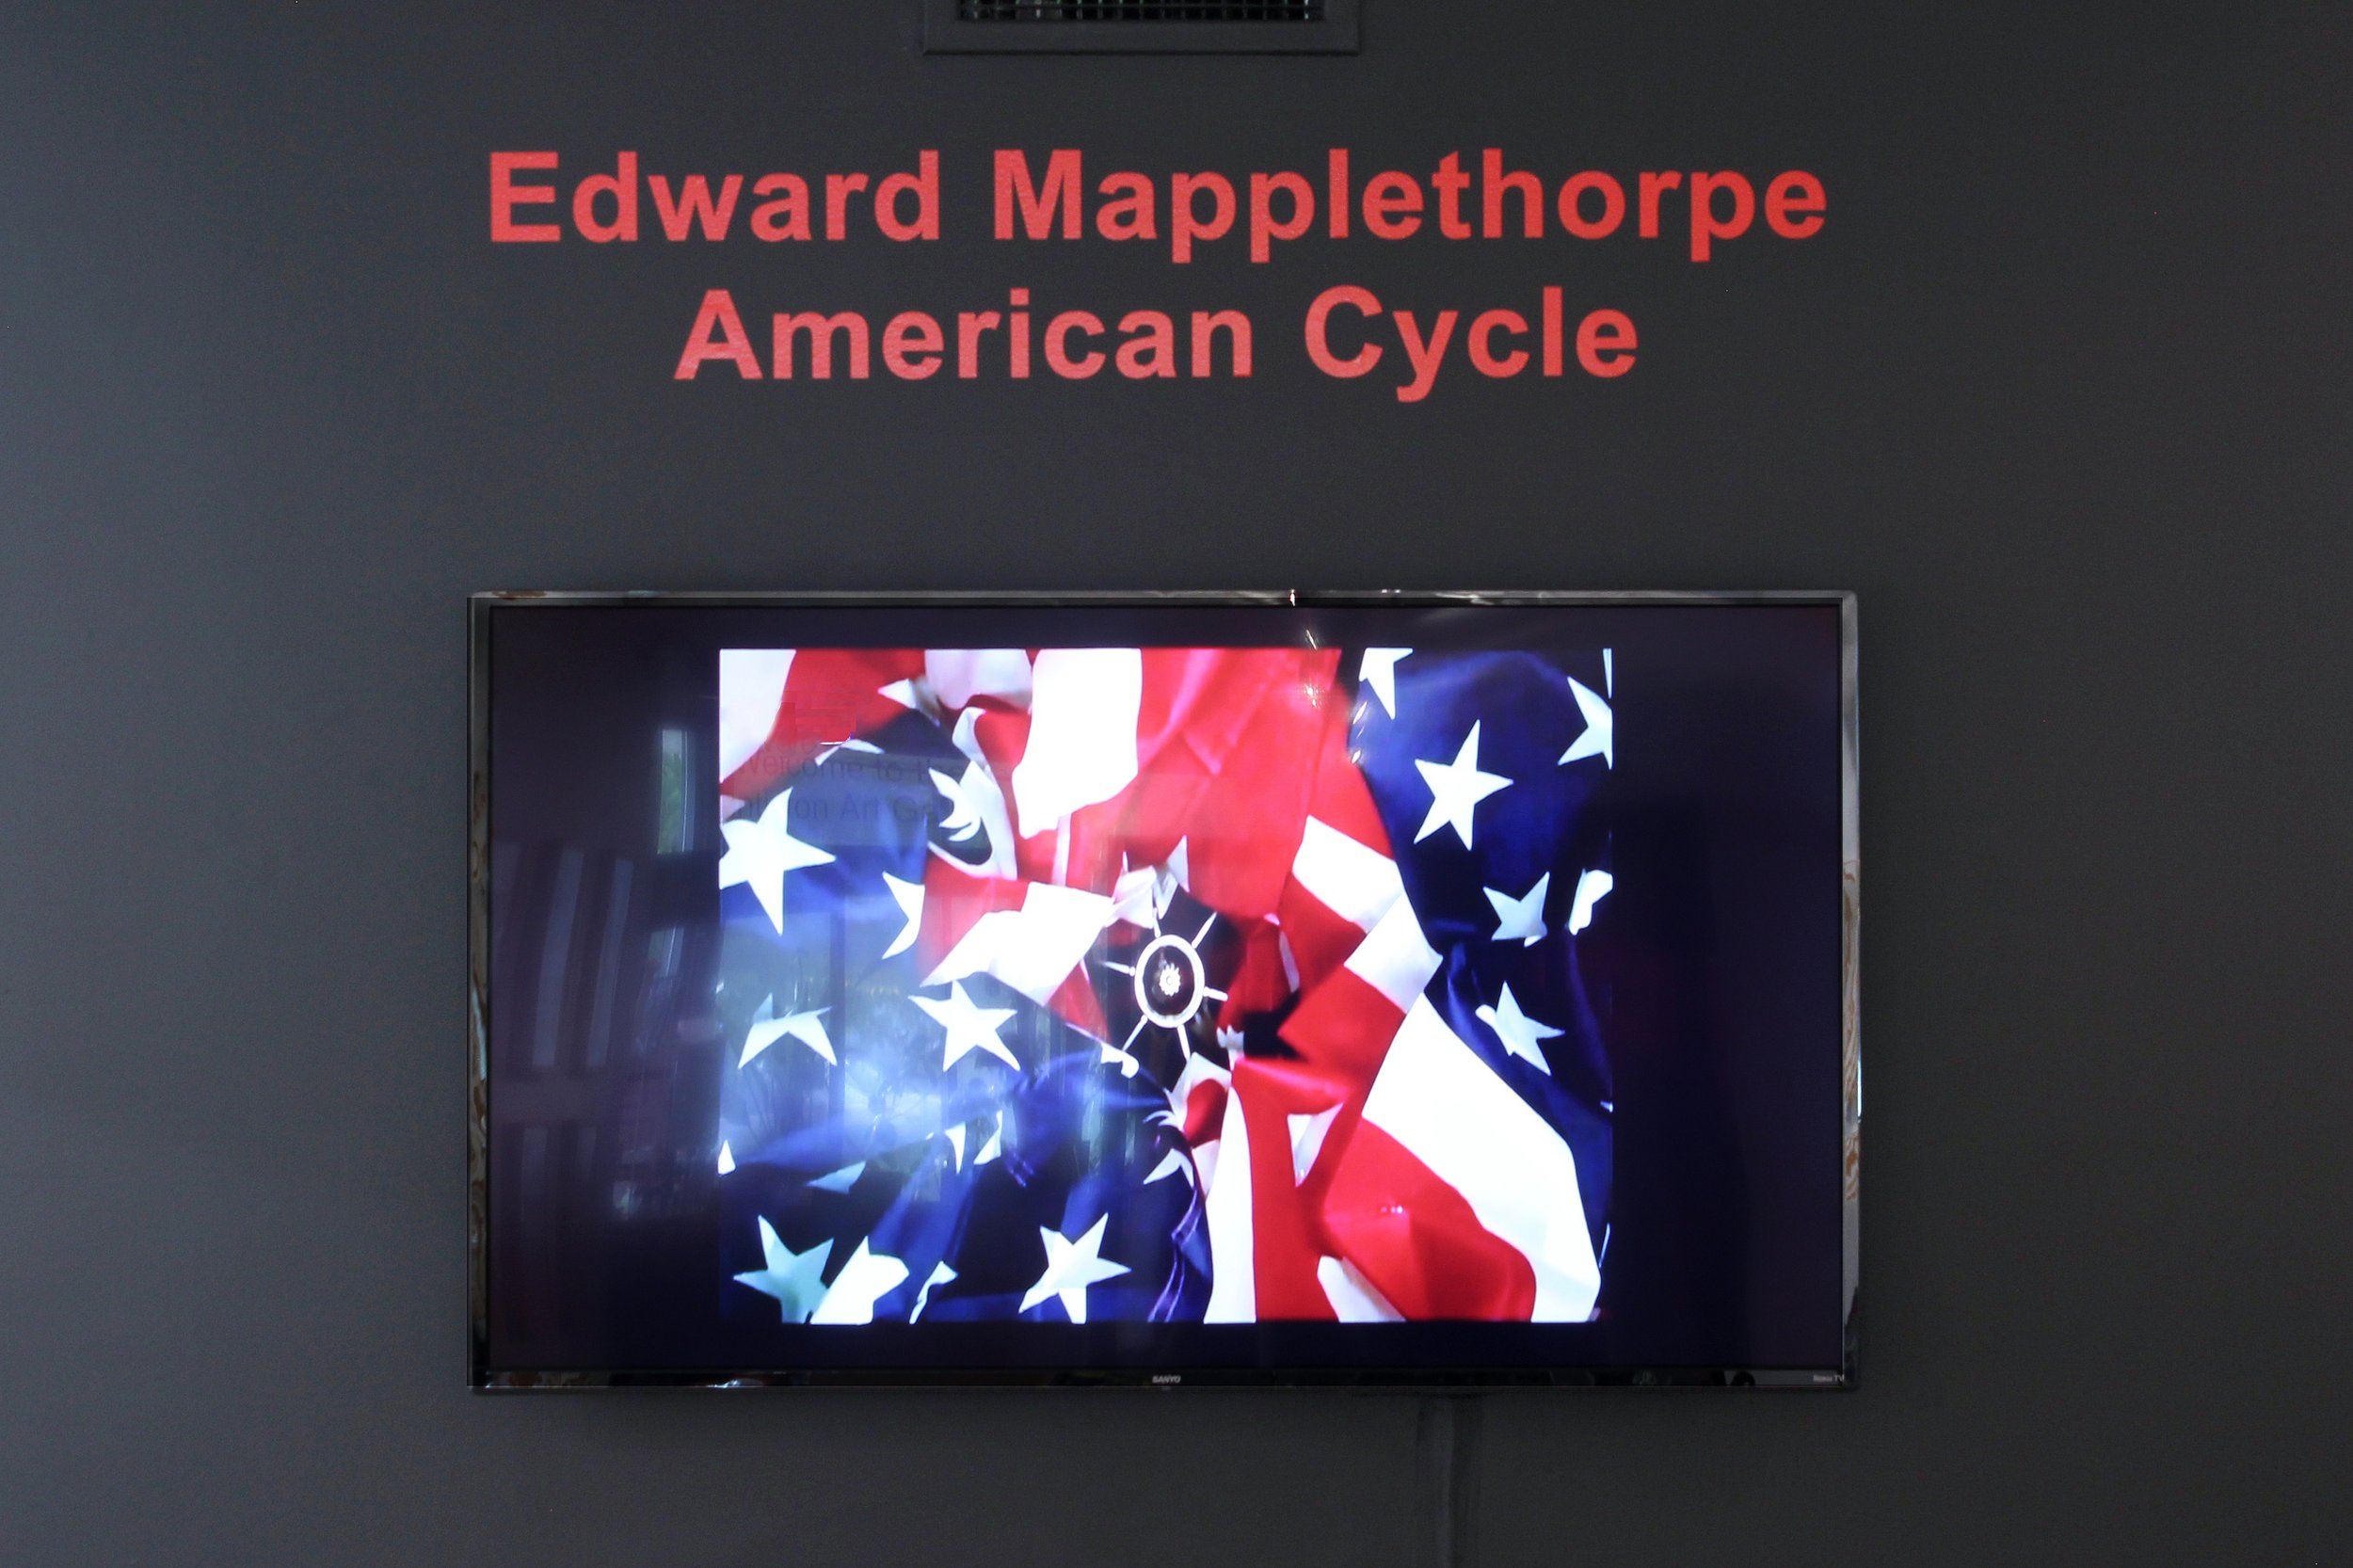 americancycle-mapplethorpe-20200921-001.JPG